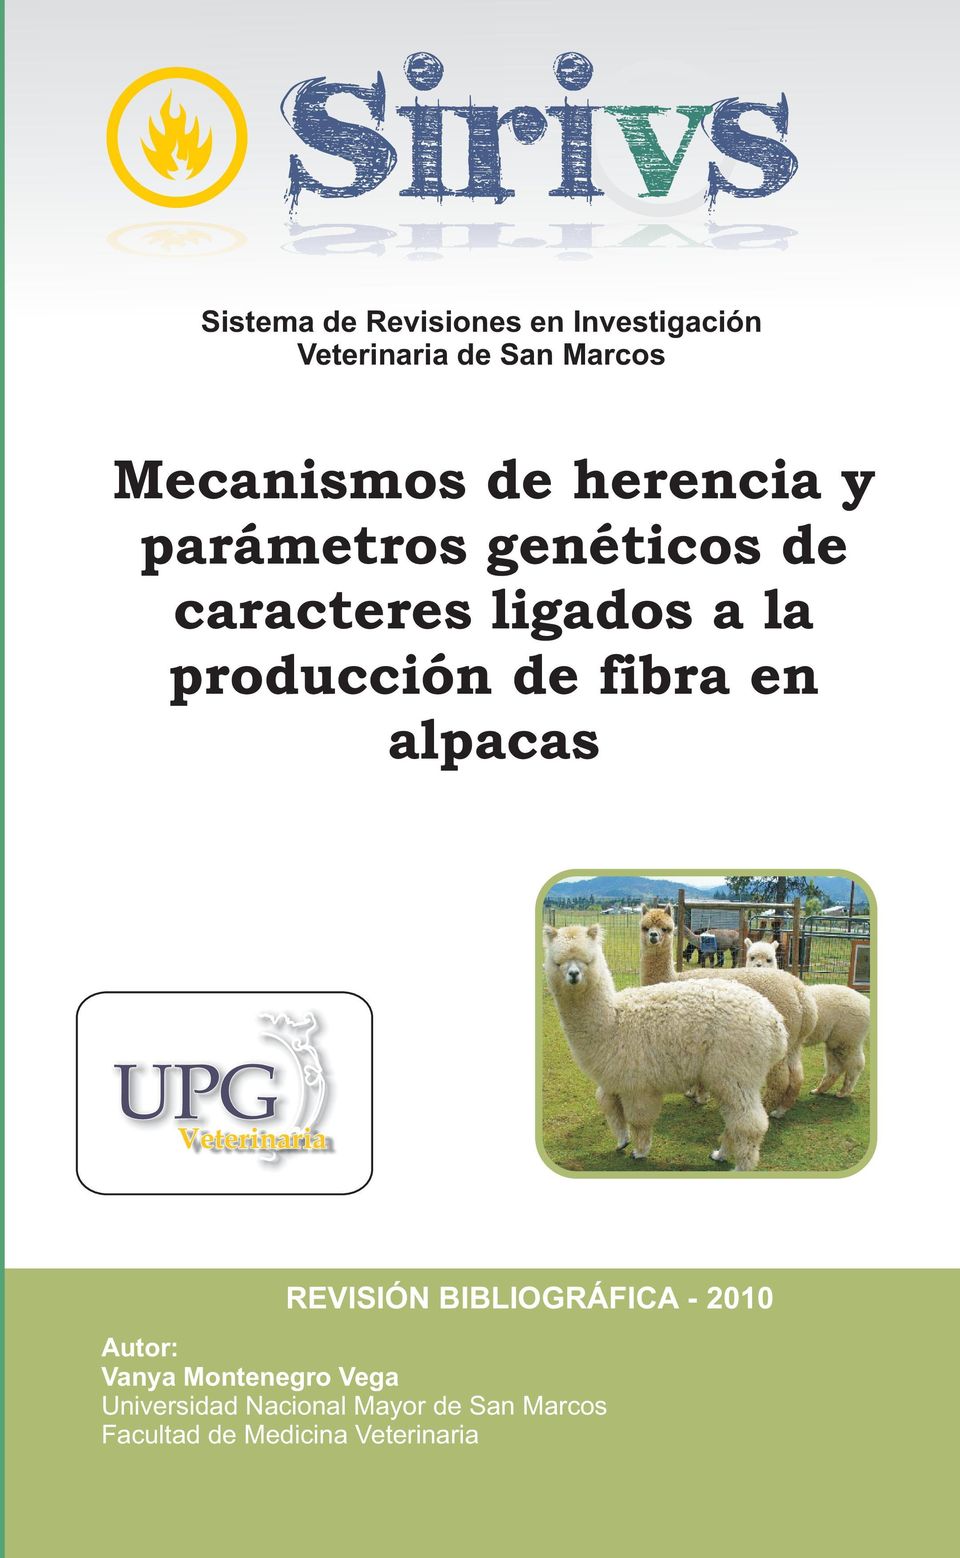 fibra en alpacas REVISIÓN BIBLIOGRÁFICA - 2010 Autor: Vanya Montenegro Vega